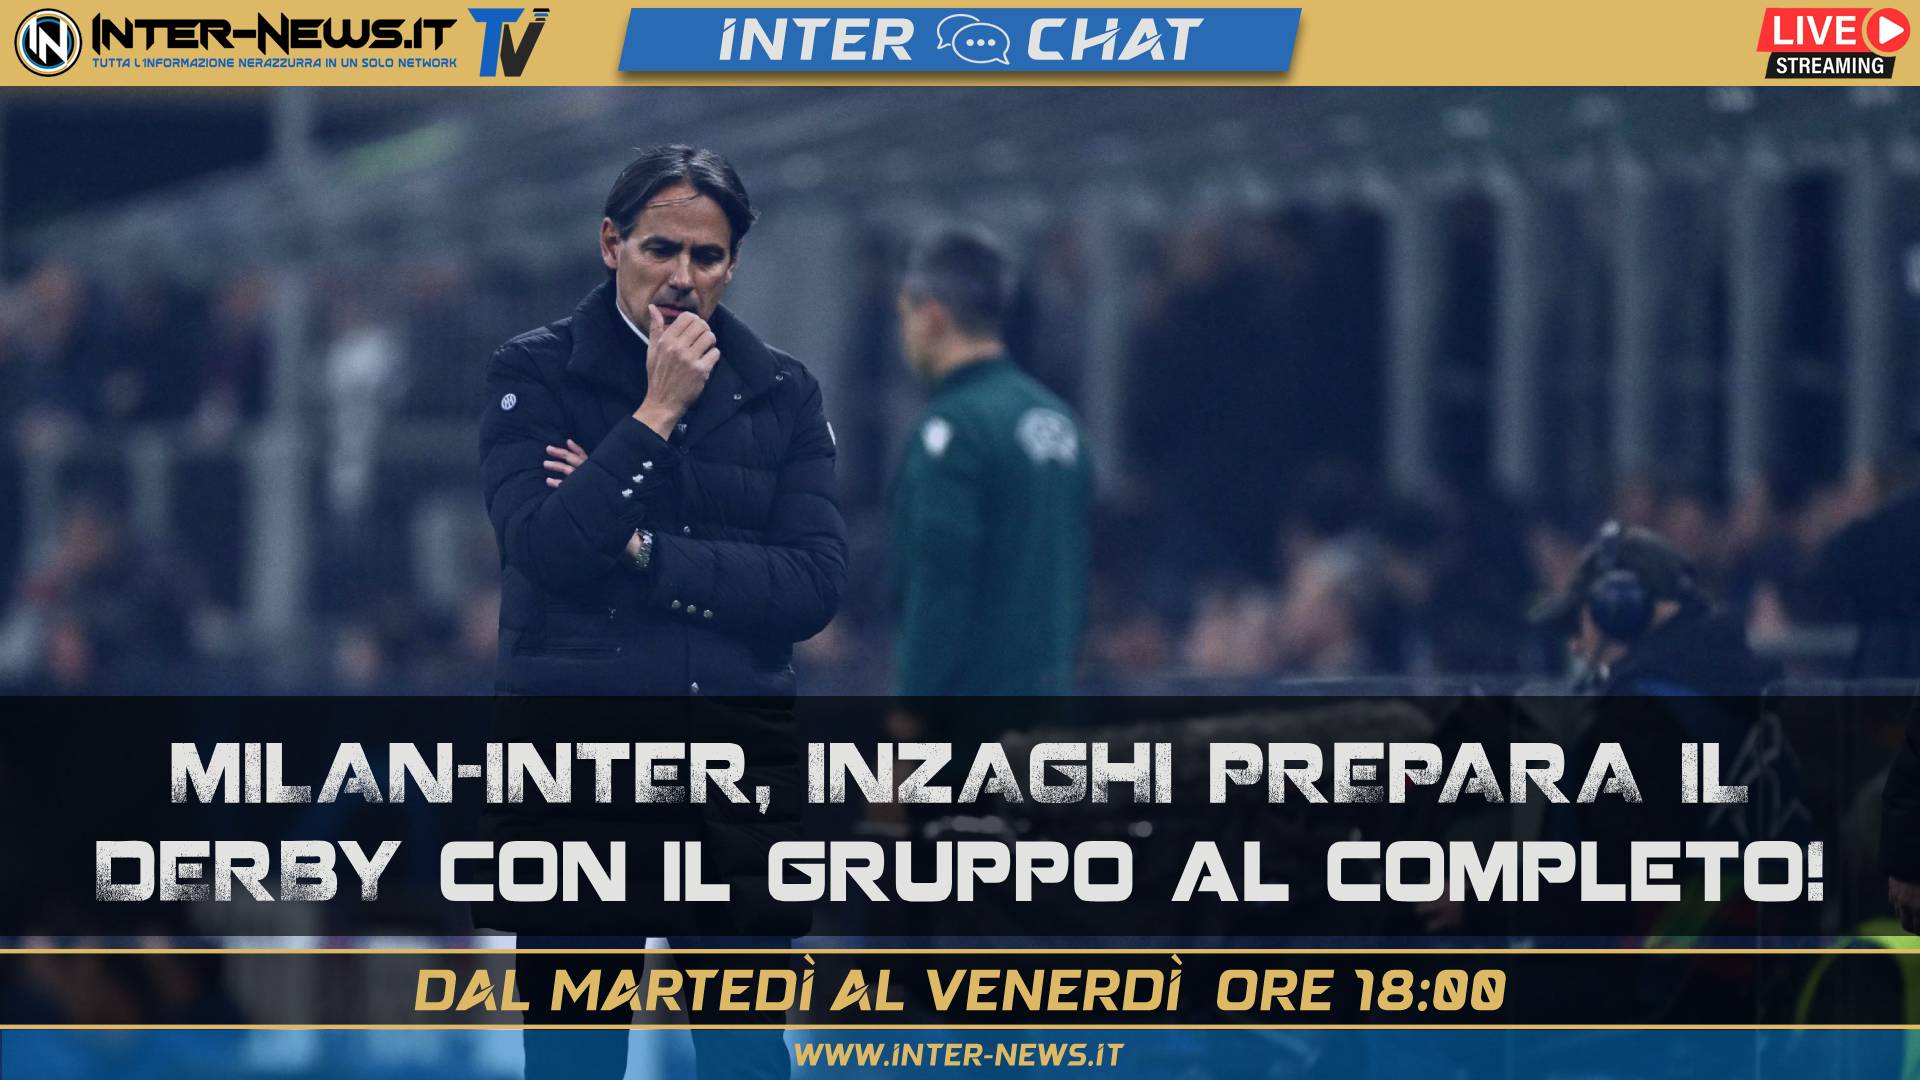 Milan Inter, Inzaghi prepara il derby: gruppo al completo | Inter Chat LIVE